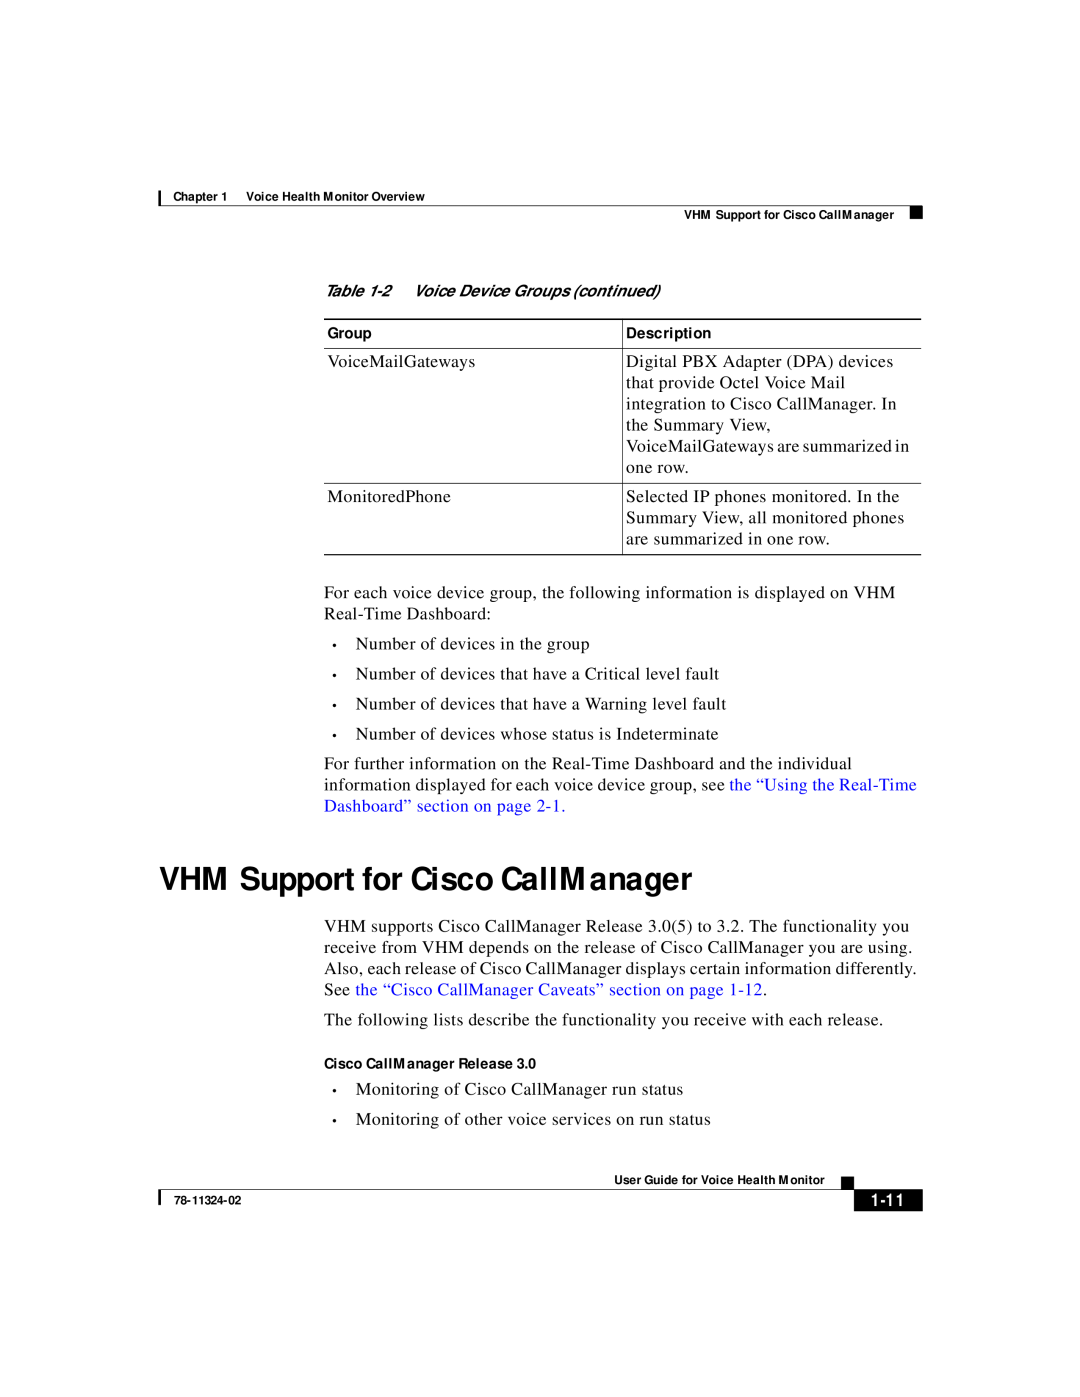 Cisco Systems 78-11324-02 manual VHM Support for Cisco CallManager, Cisco CallManager Release, 1-11, Group, Description 